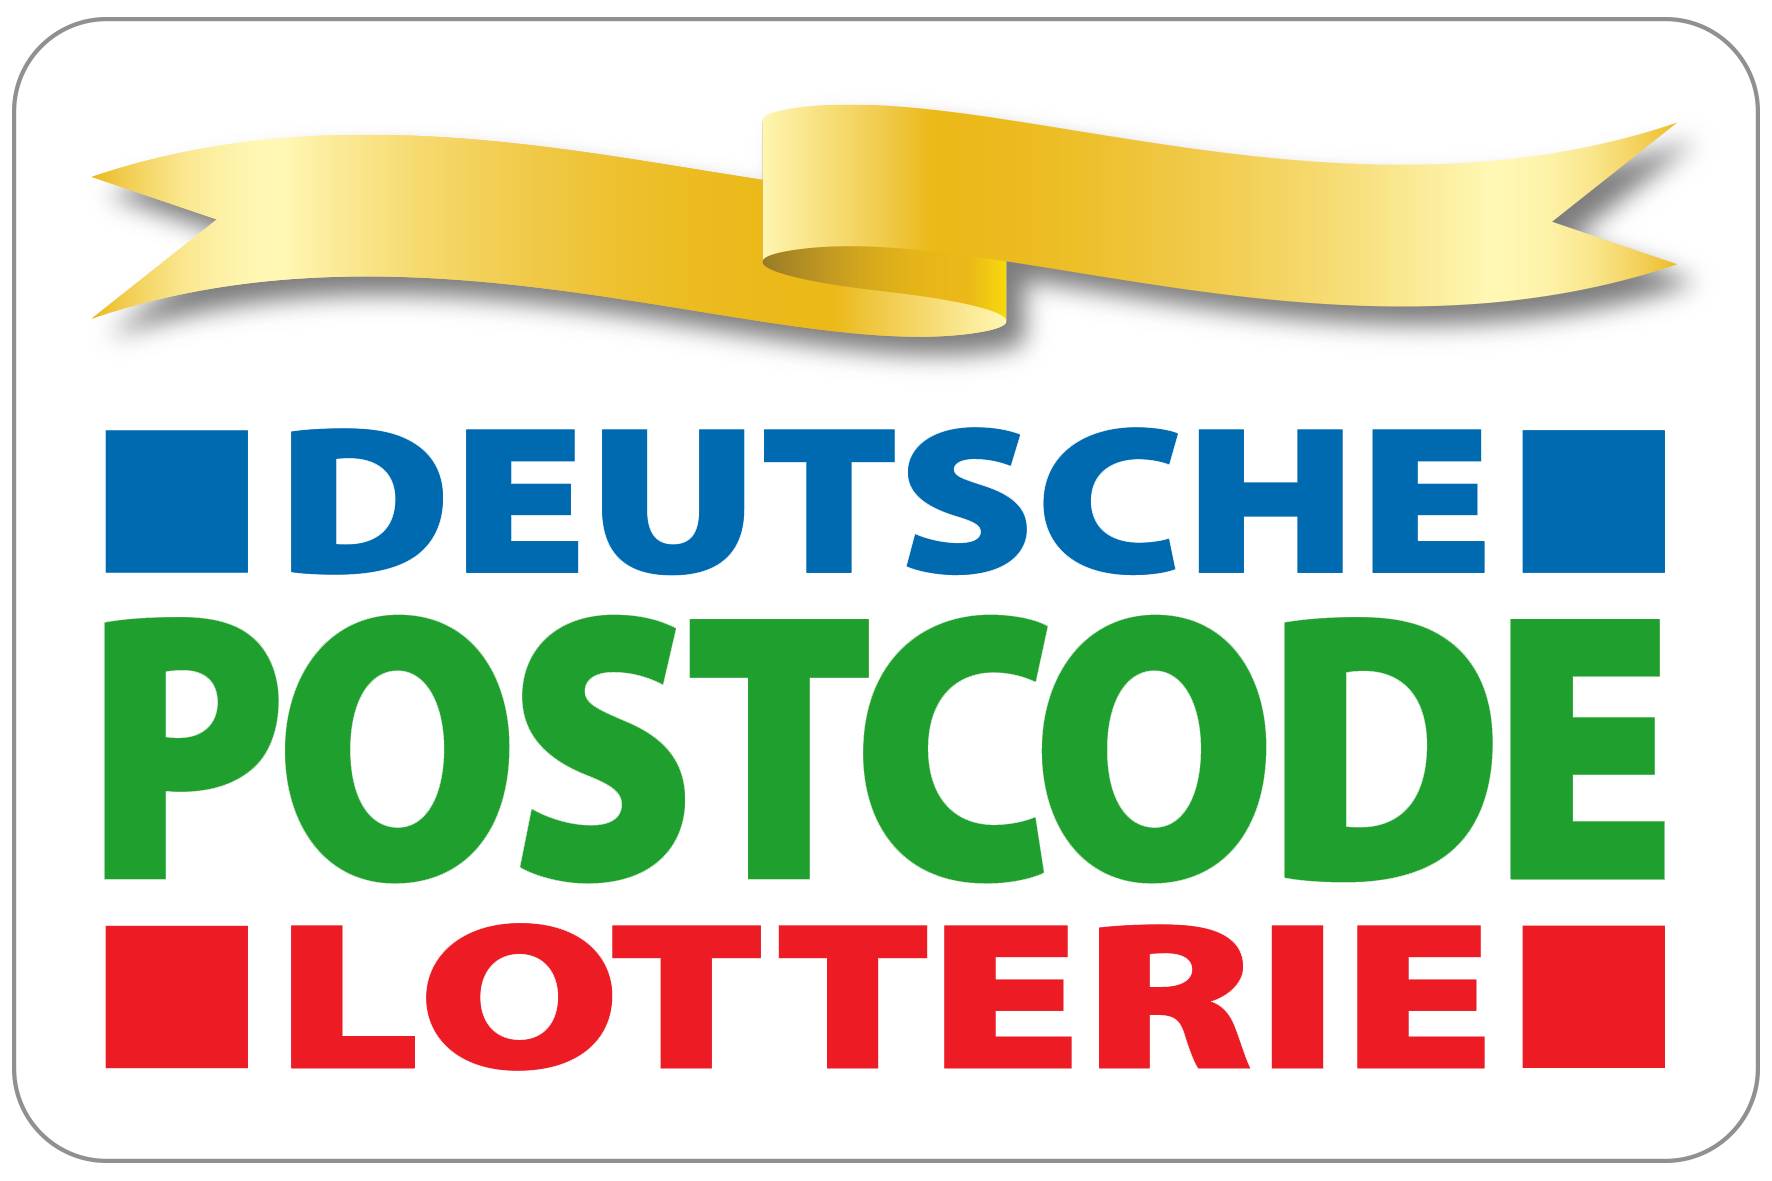 Deutsche Postcode Lotterie Logo